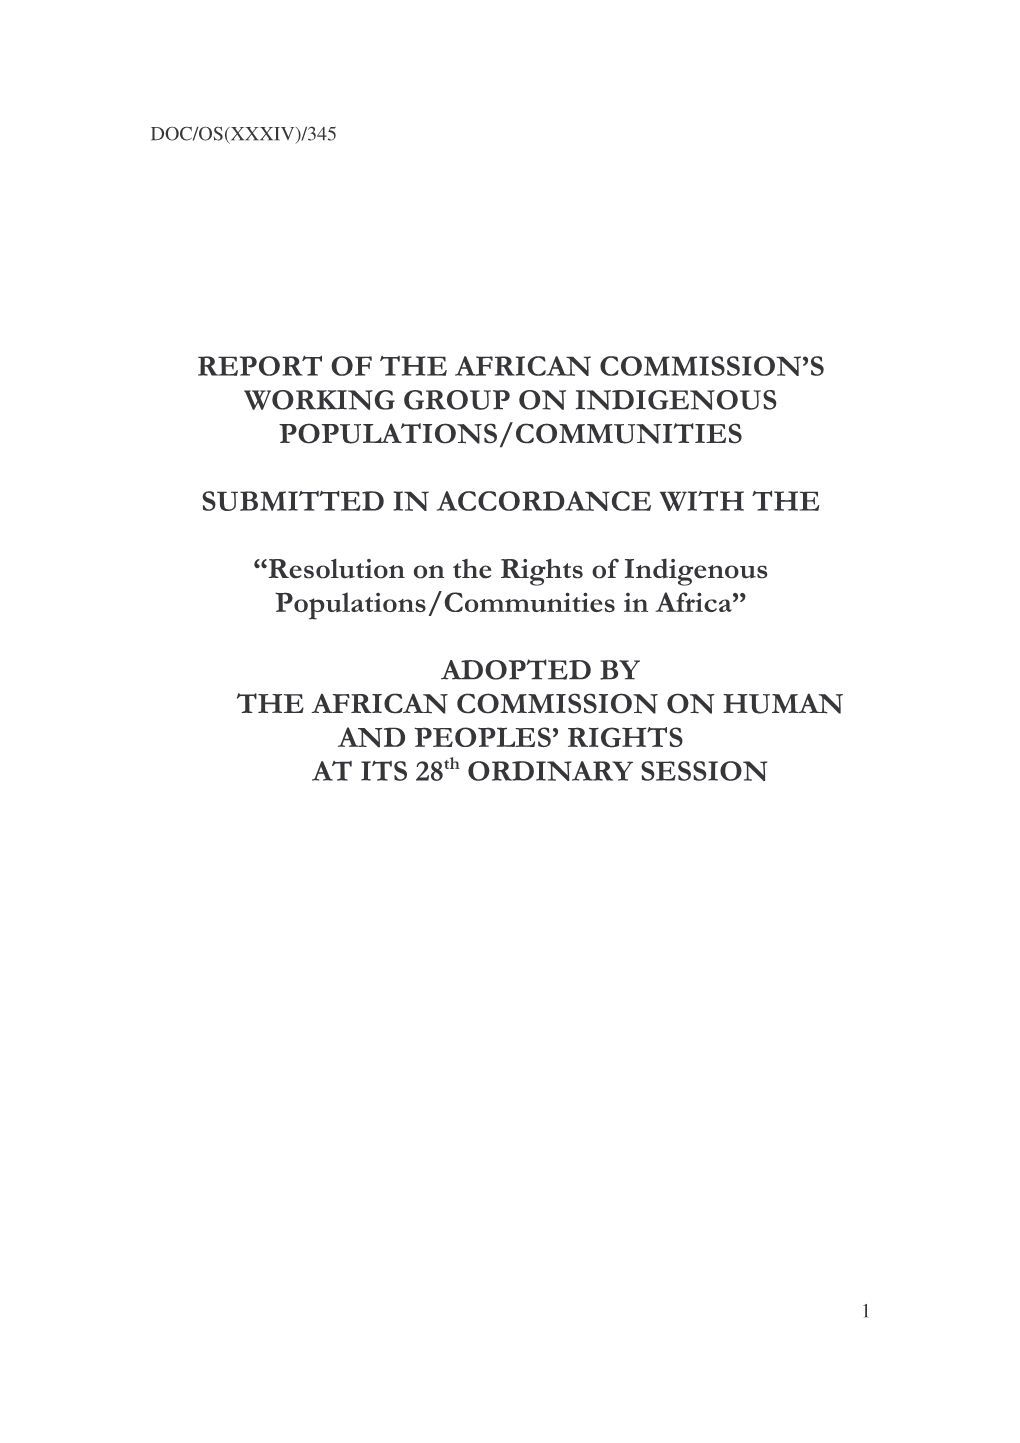 Expert Report on Indigenous Communities